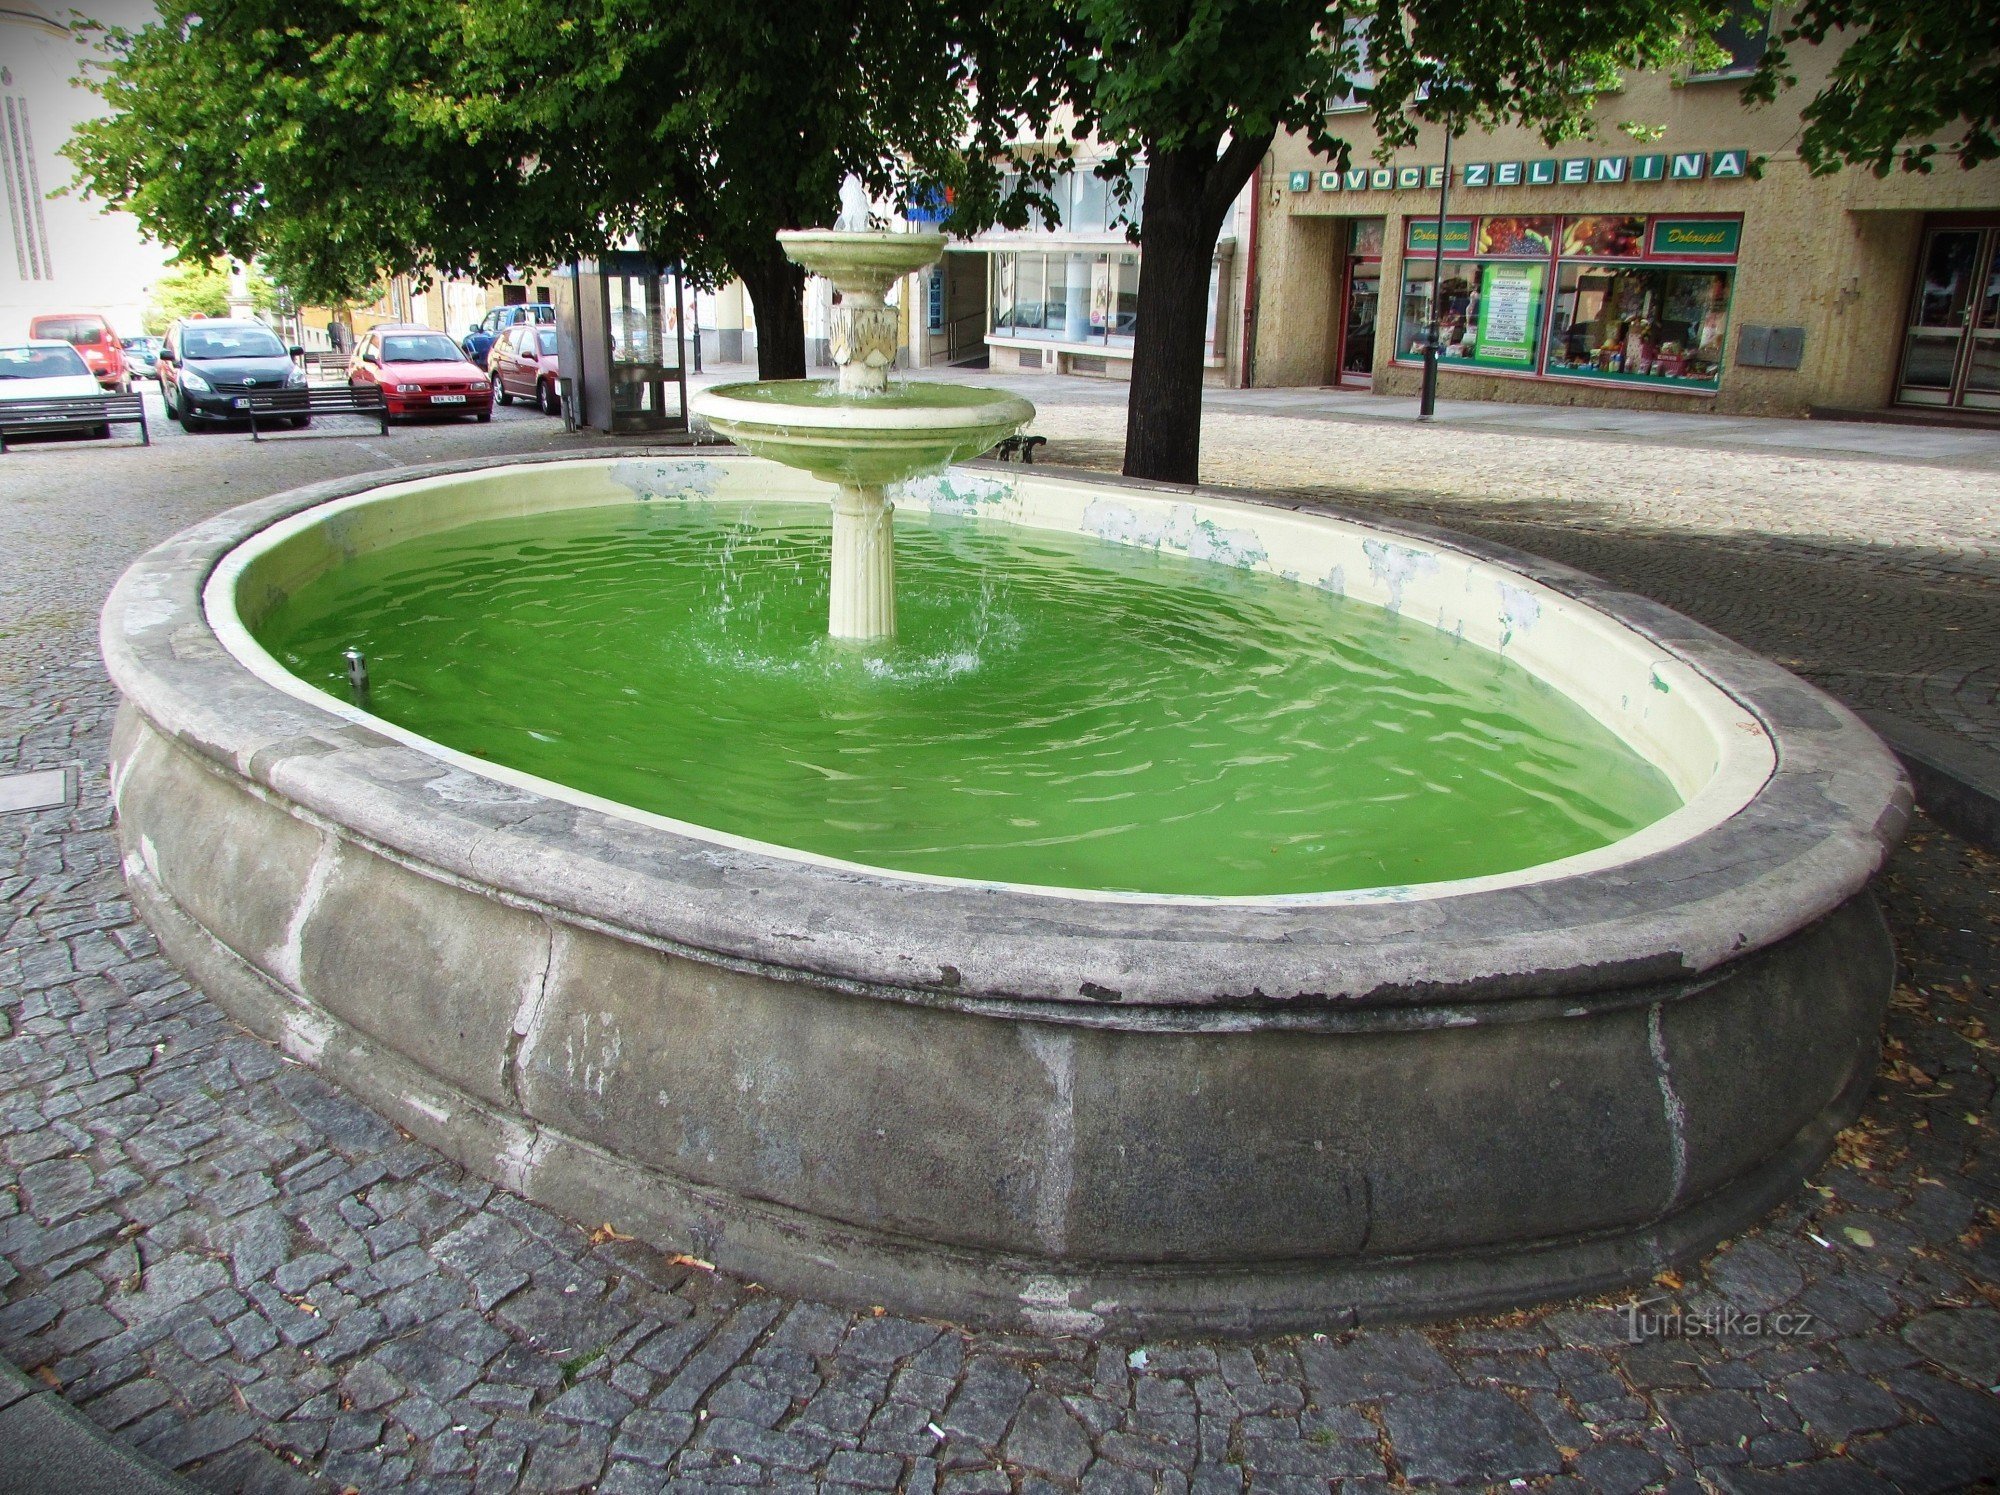 đài phun nước ở quảng trường